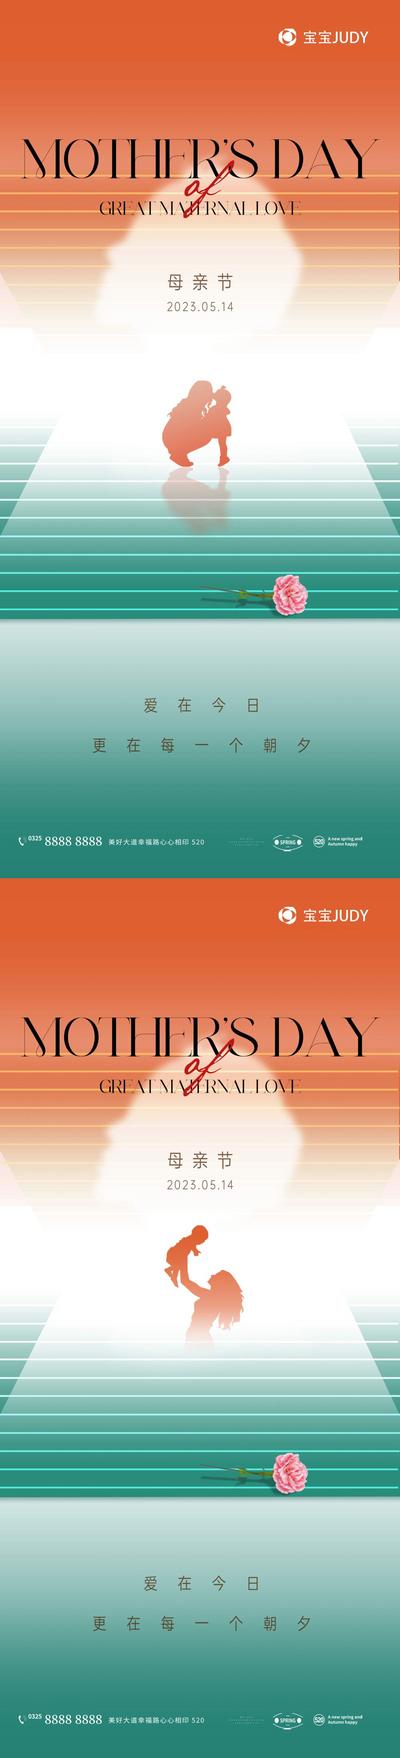 南门网 广告 海报 插画 母亲节 母亲节快乐 节日节气 妈妈 母女 女孩 亲情 室内 温暖 鲜花